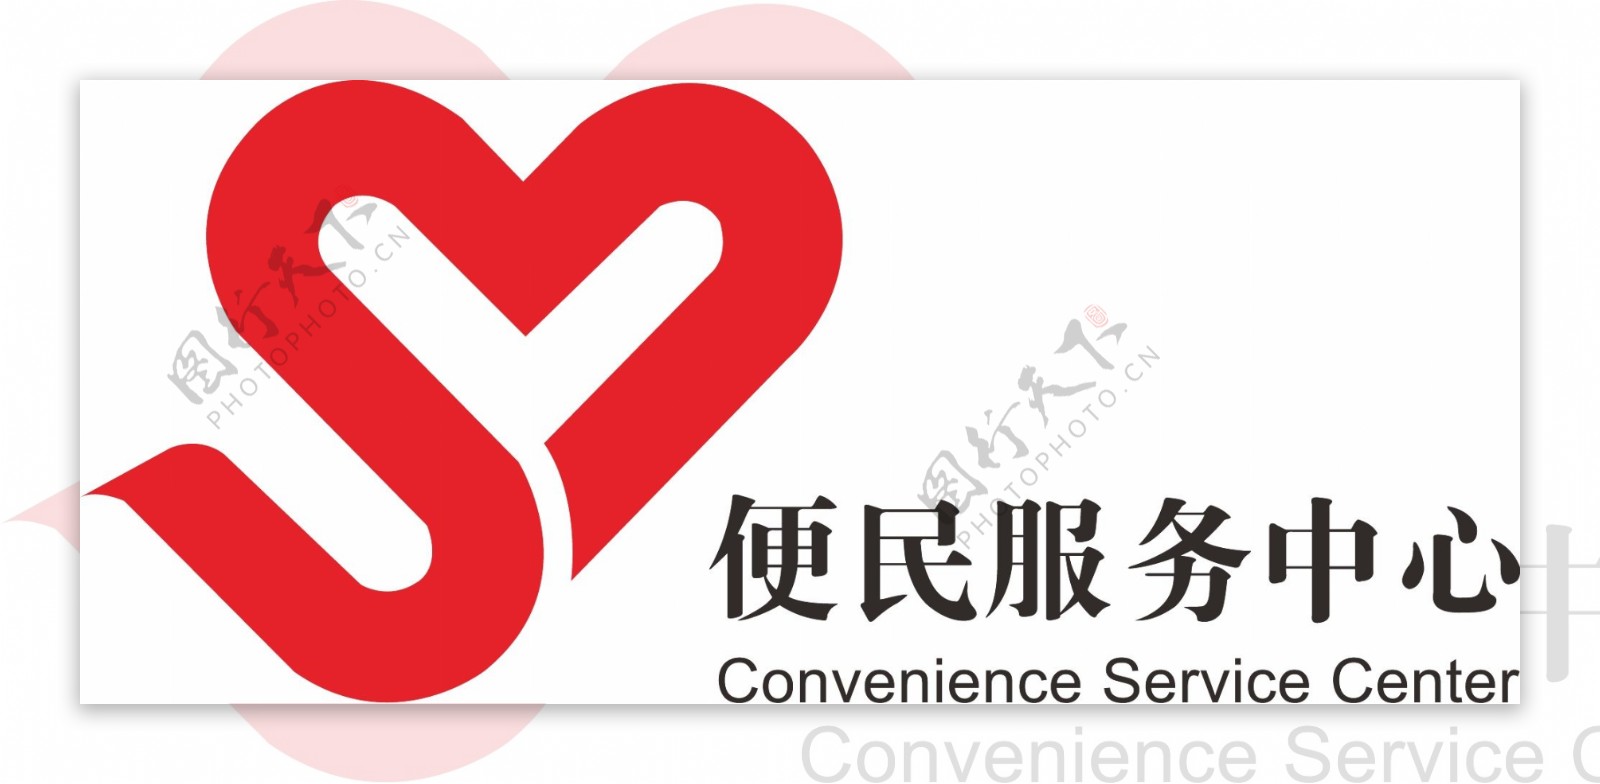 上海卫生局便民服务中心logo图片